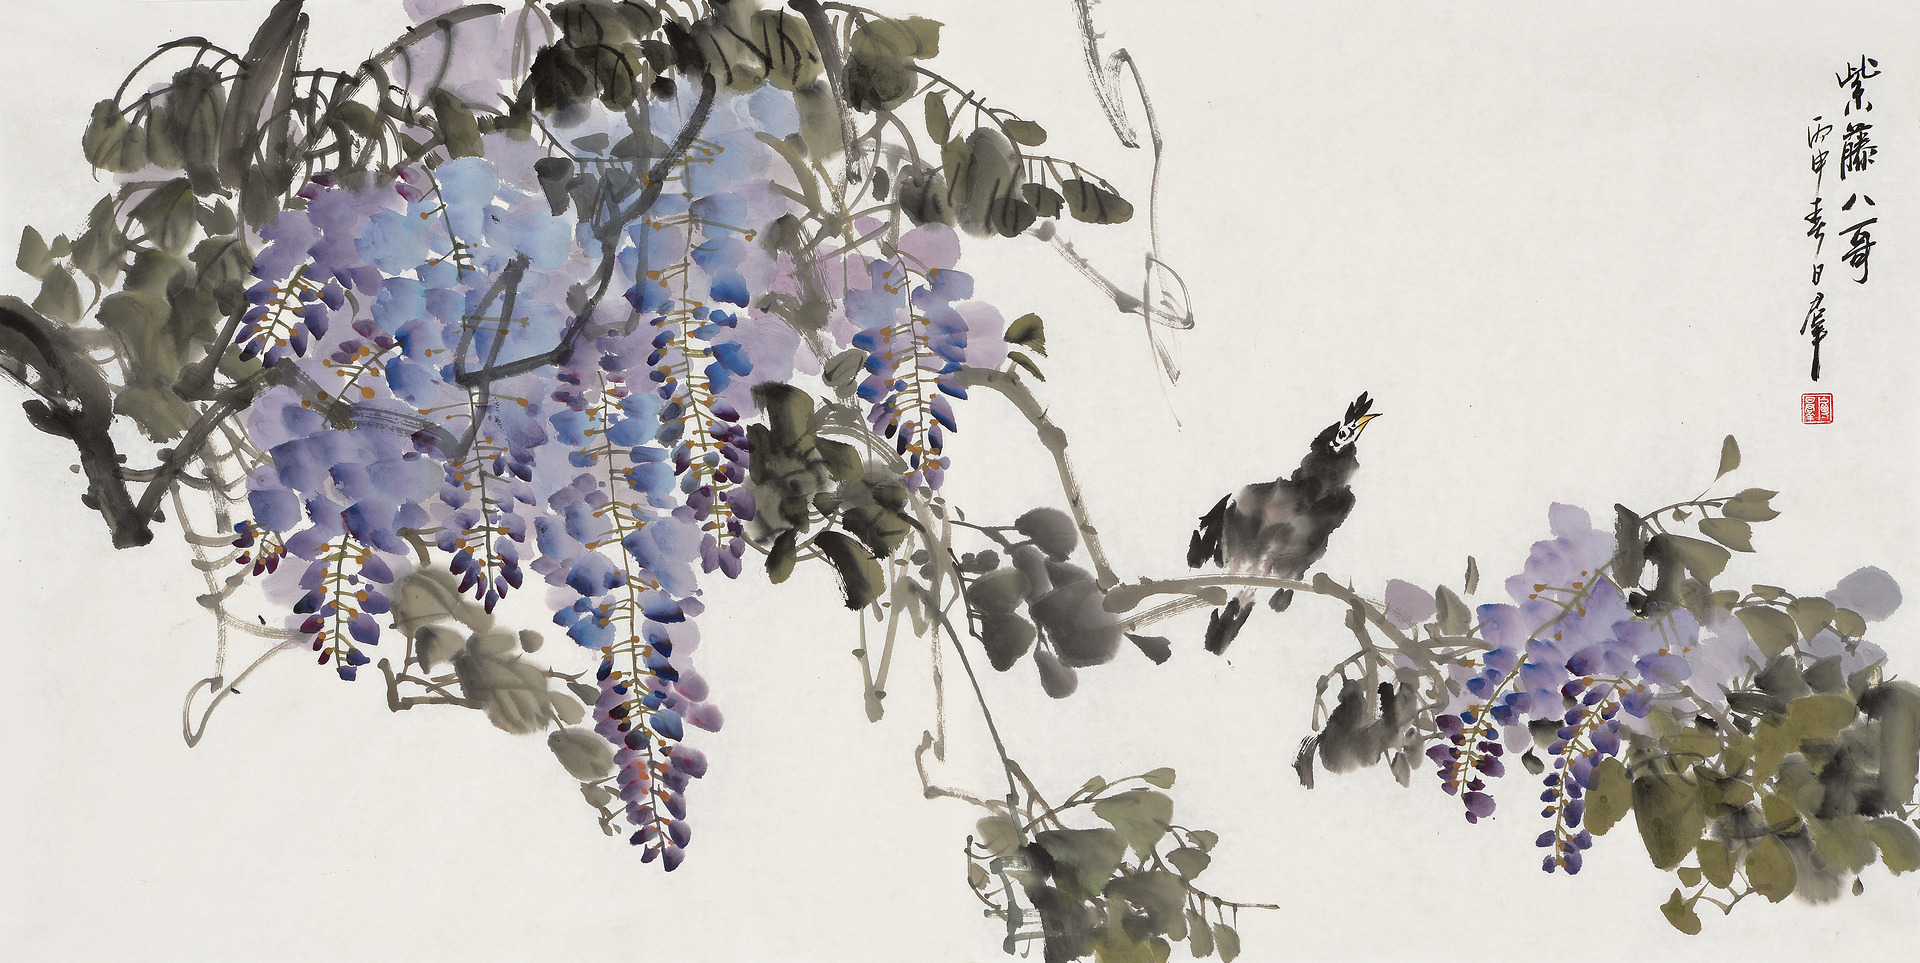 《紫藤八哥》写意花鸟 2016年